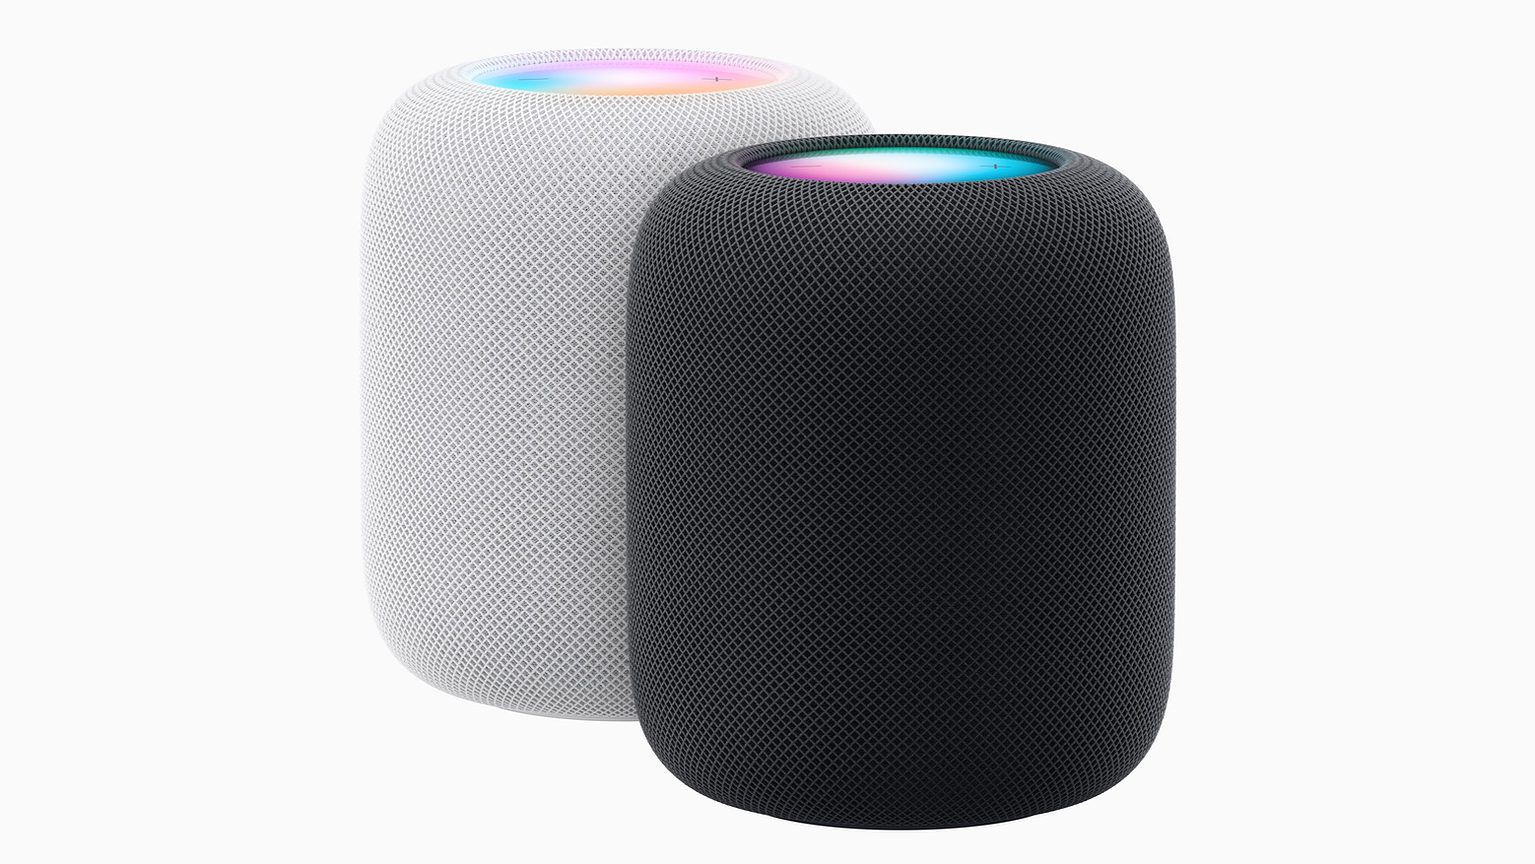 #Apple HomePod kehrt zurück – Die Soundqualität soll nun endlich gut sein